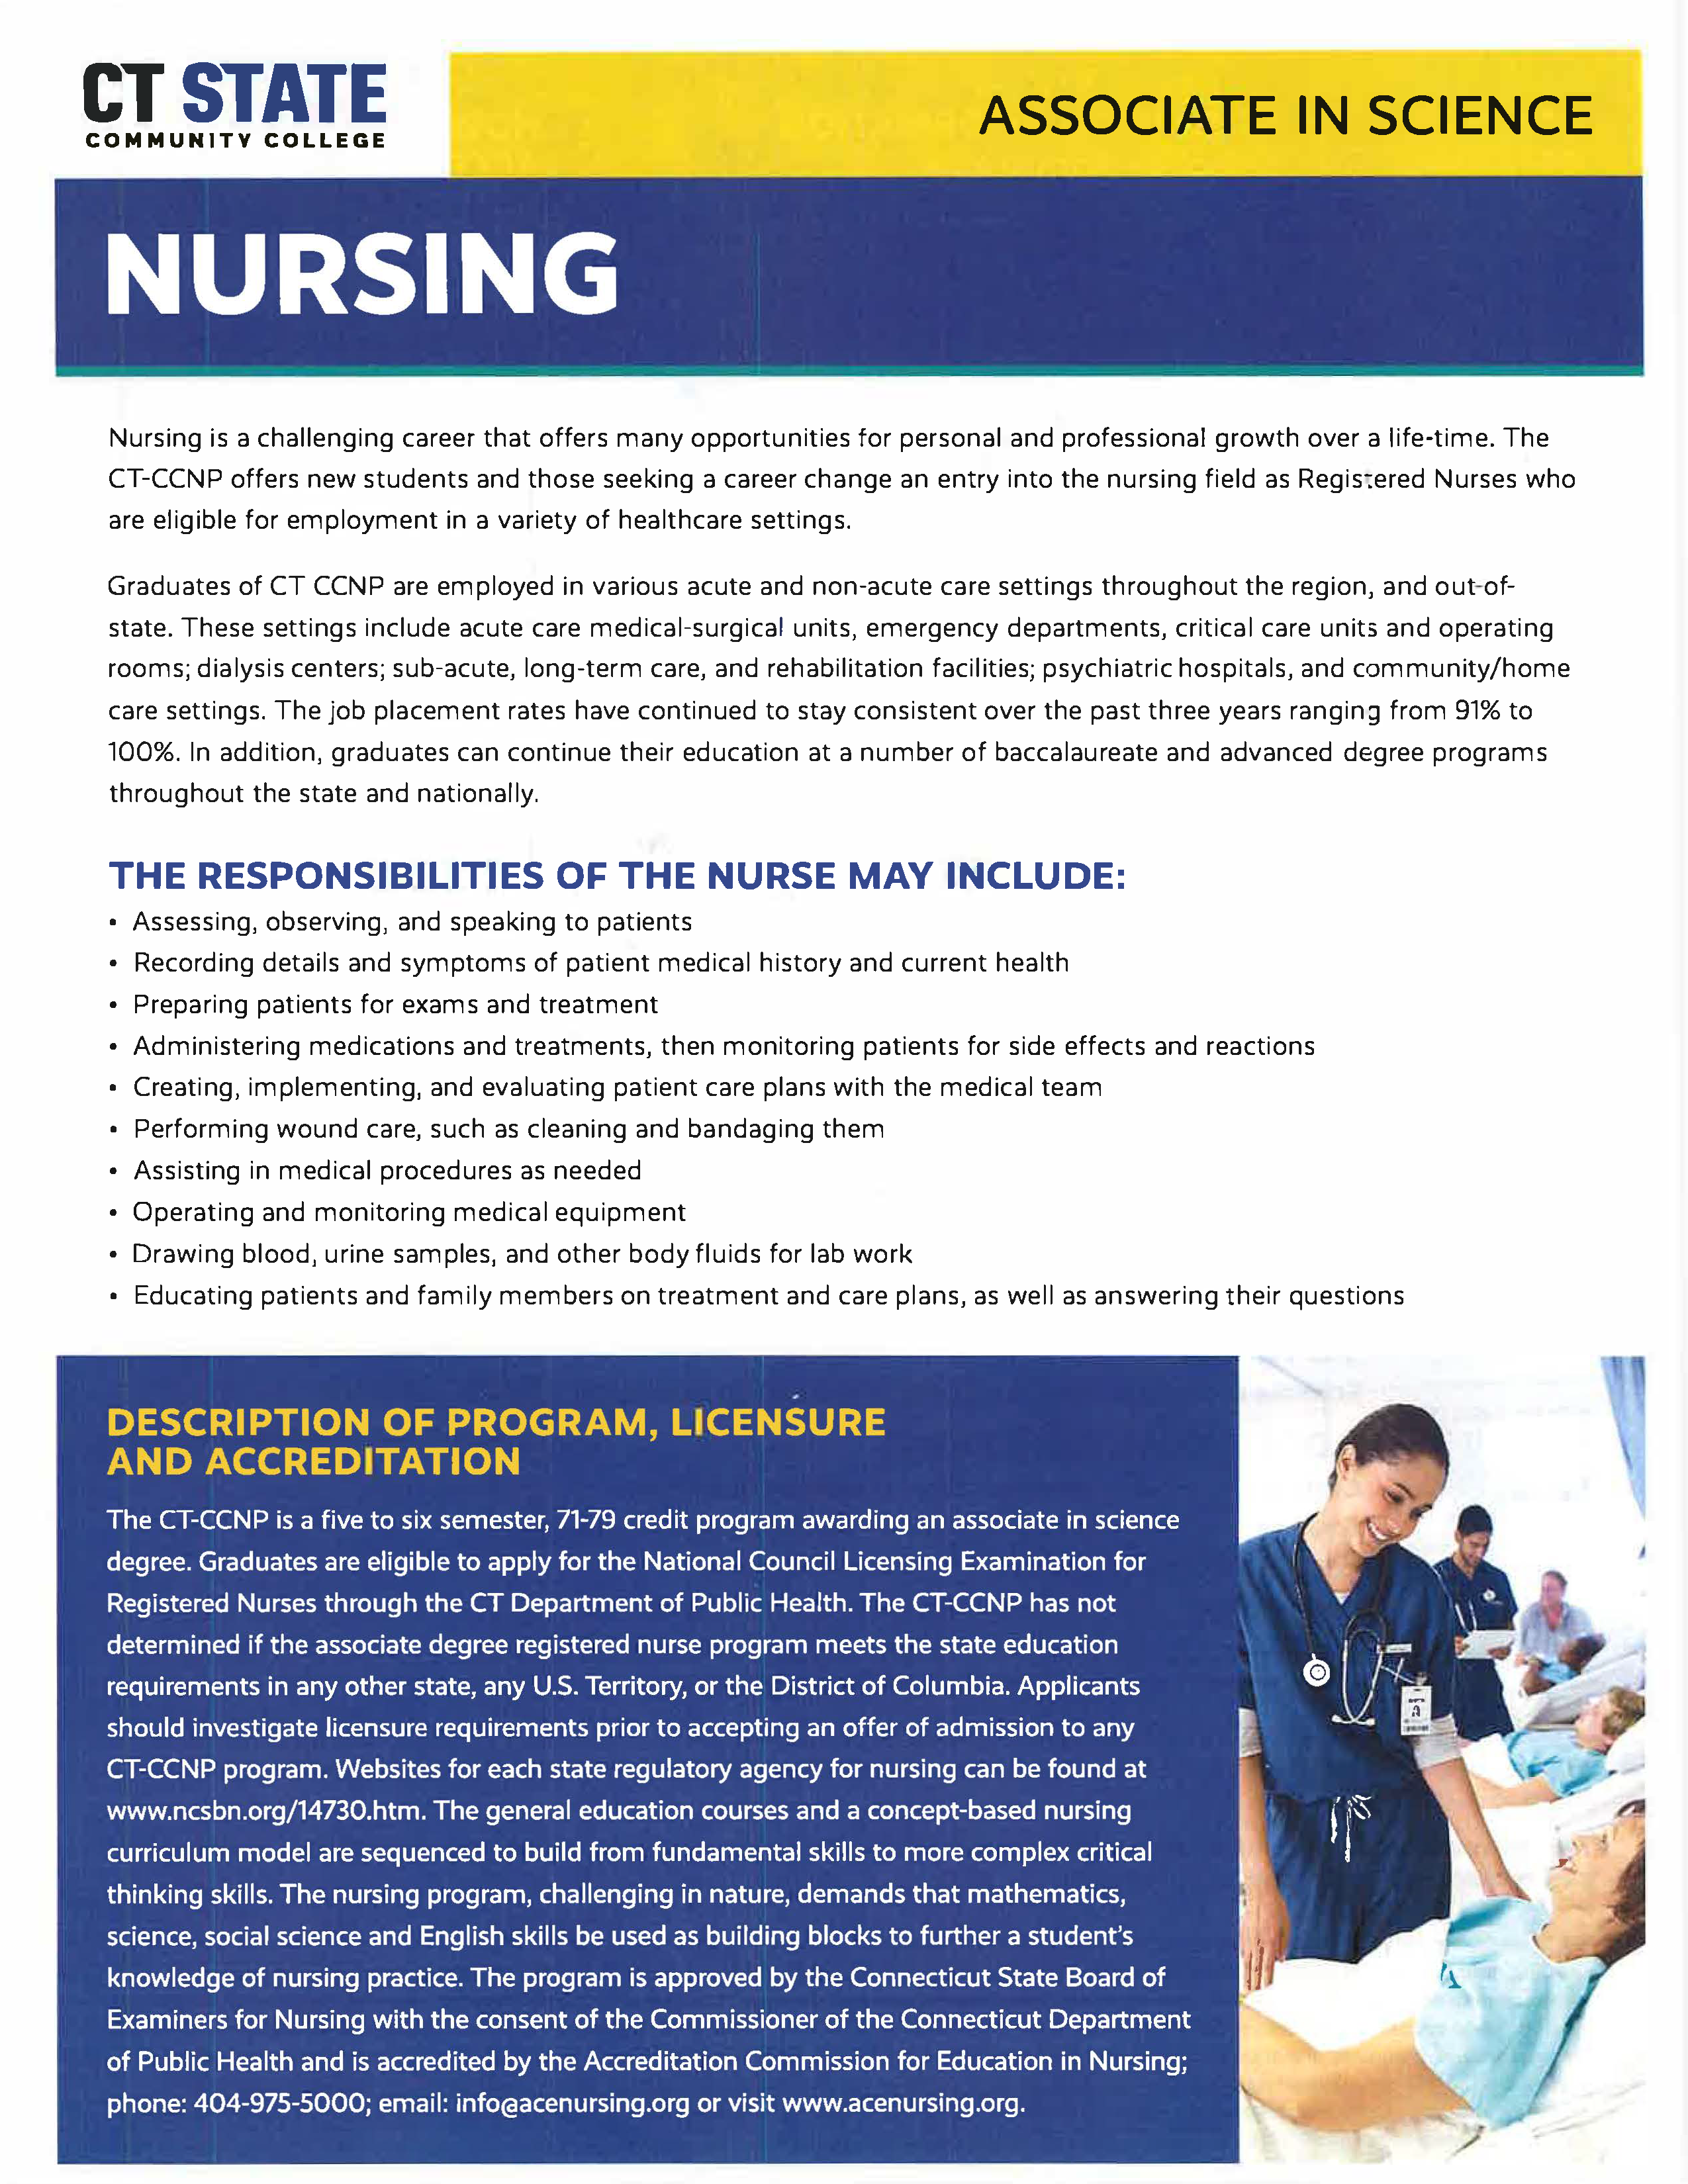 Nursing Brochure Page 2